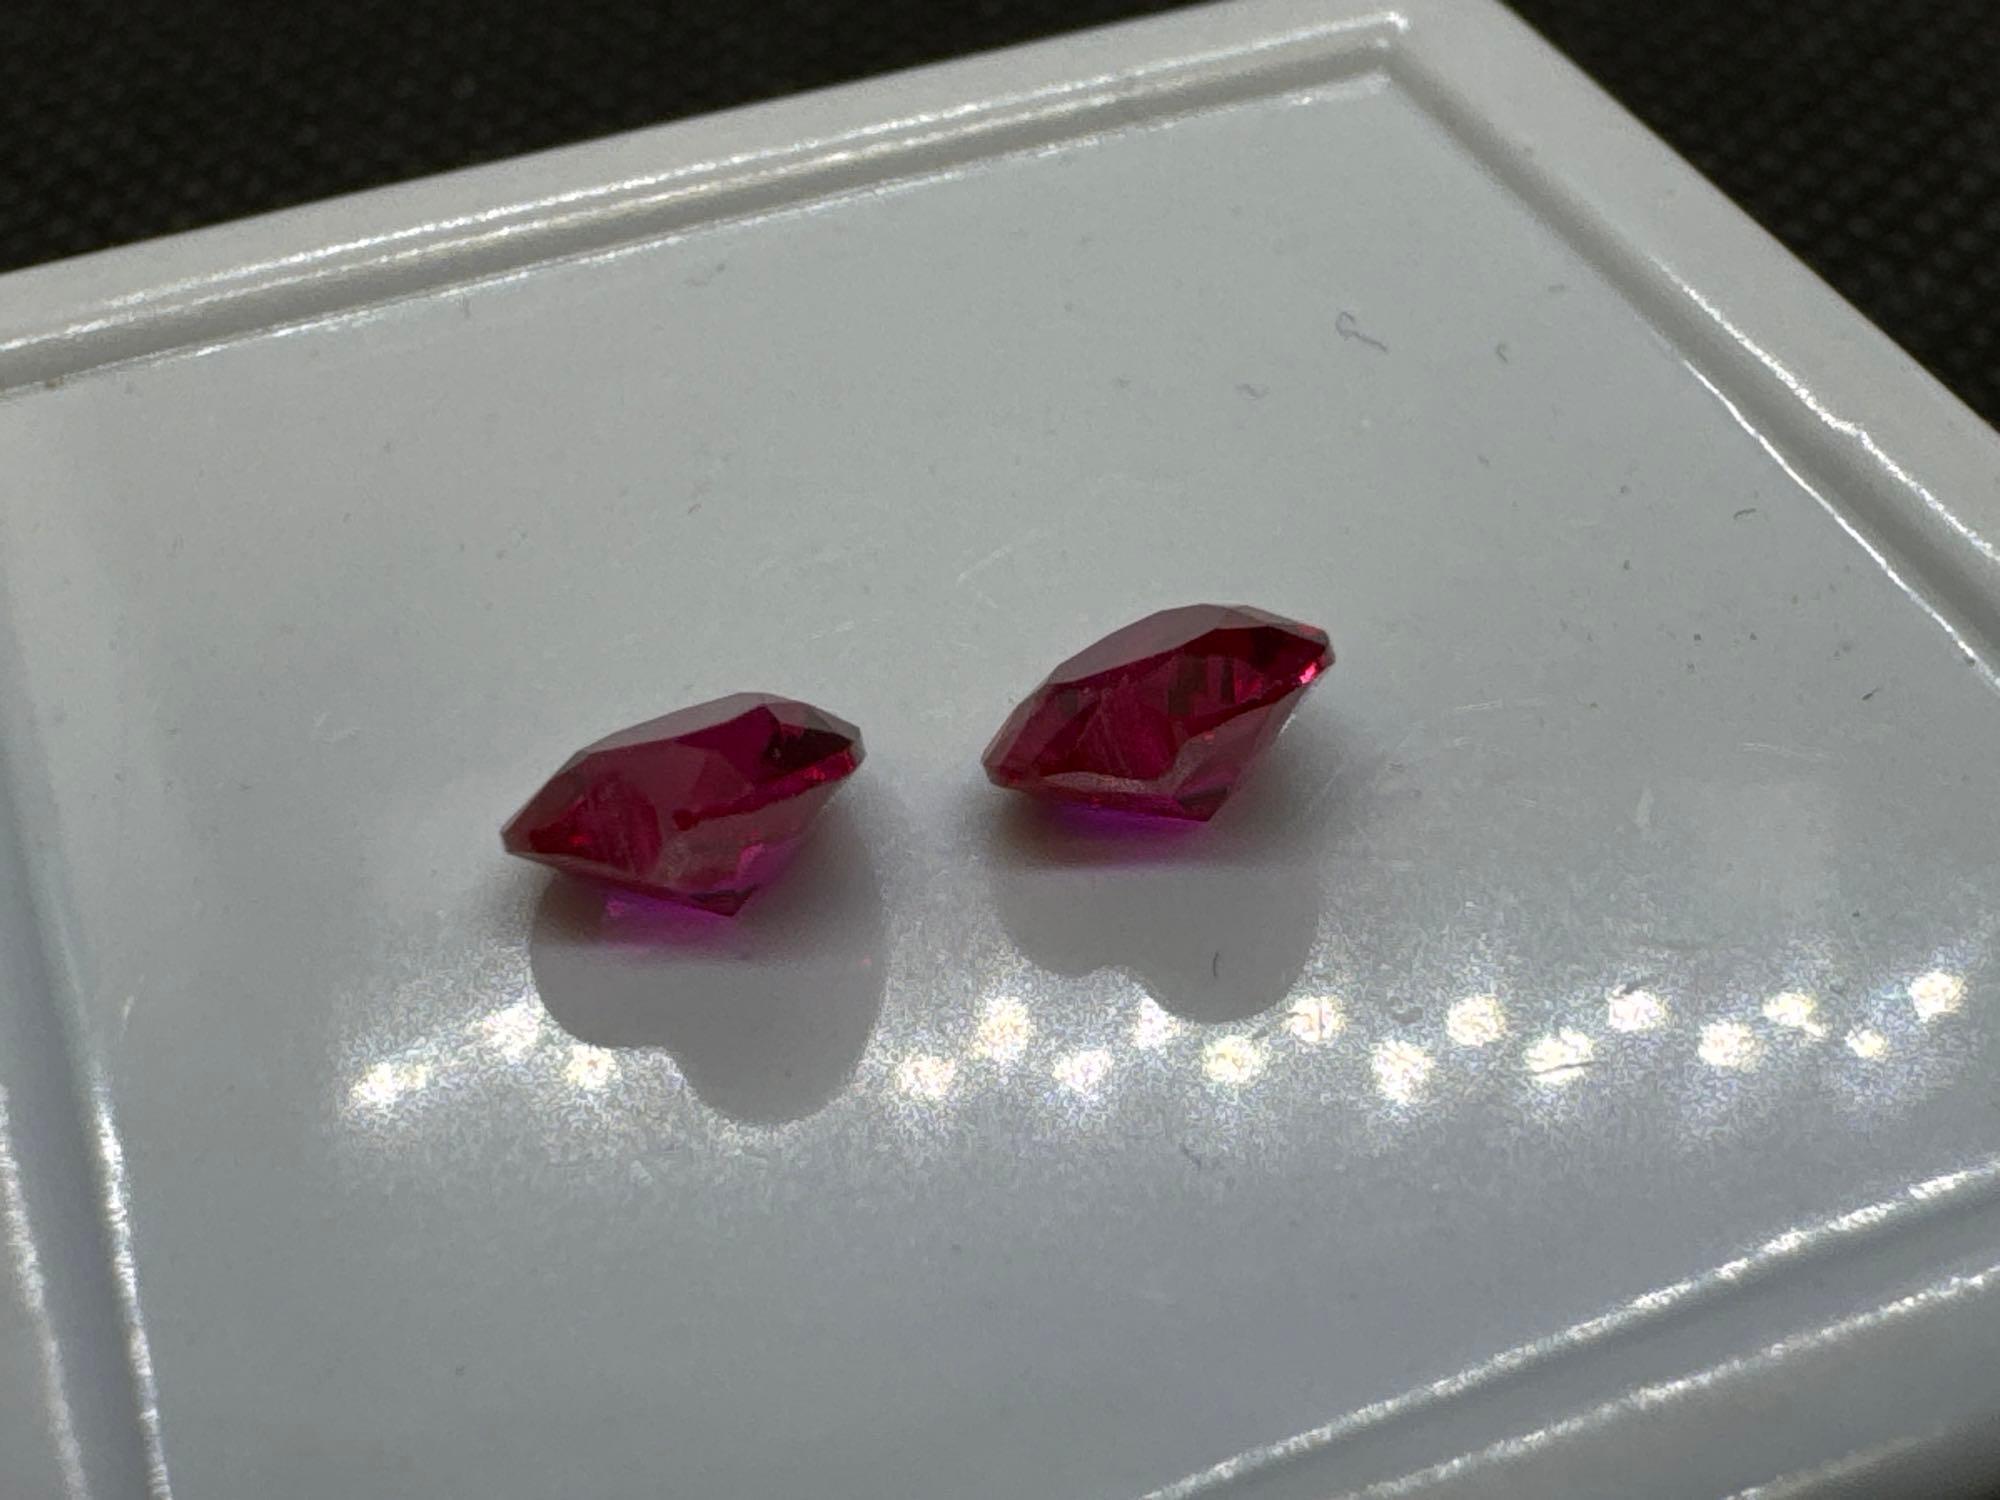 Pair Of Heart Cut Red Ruby Gemstones 1.75 Ct